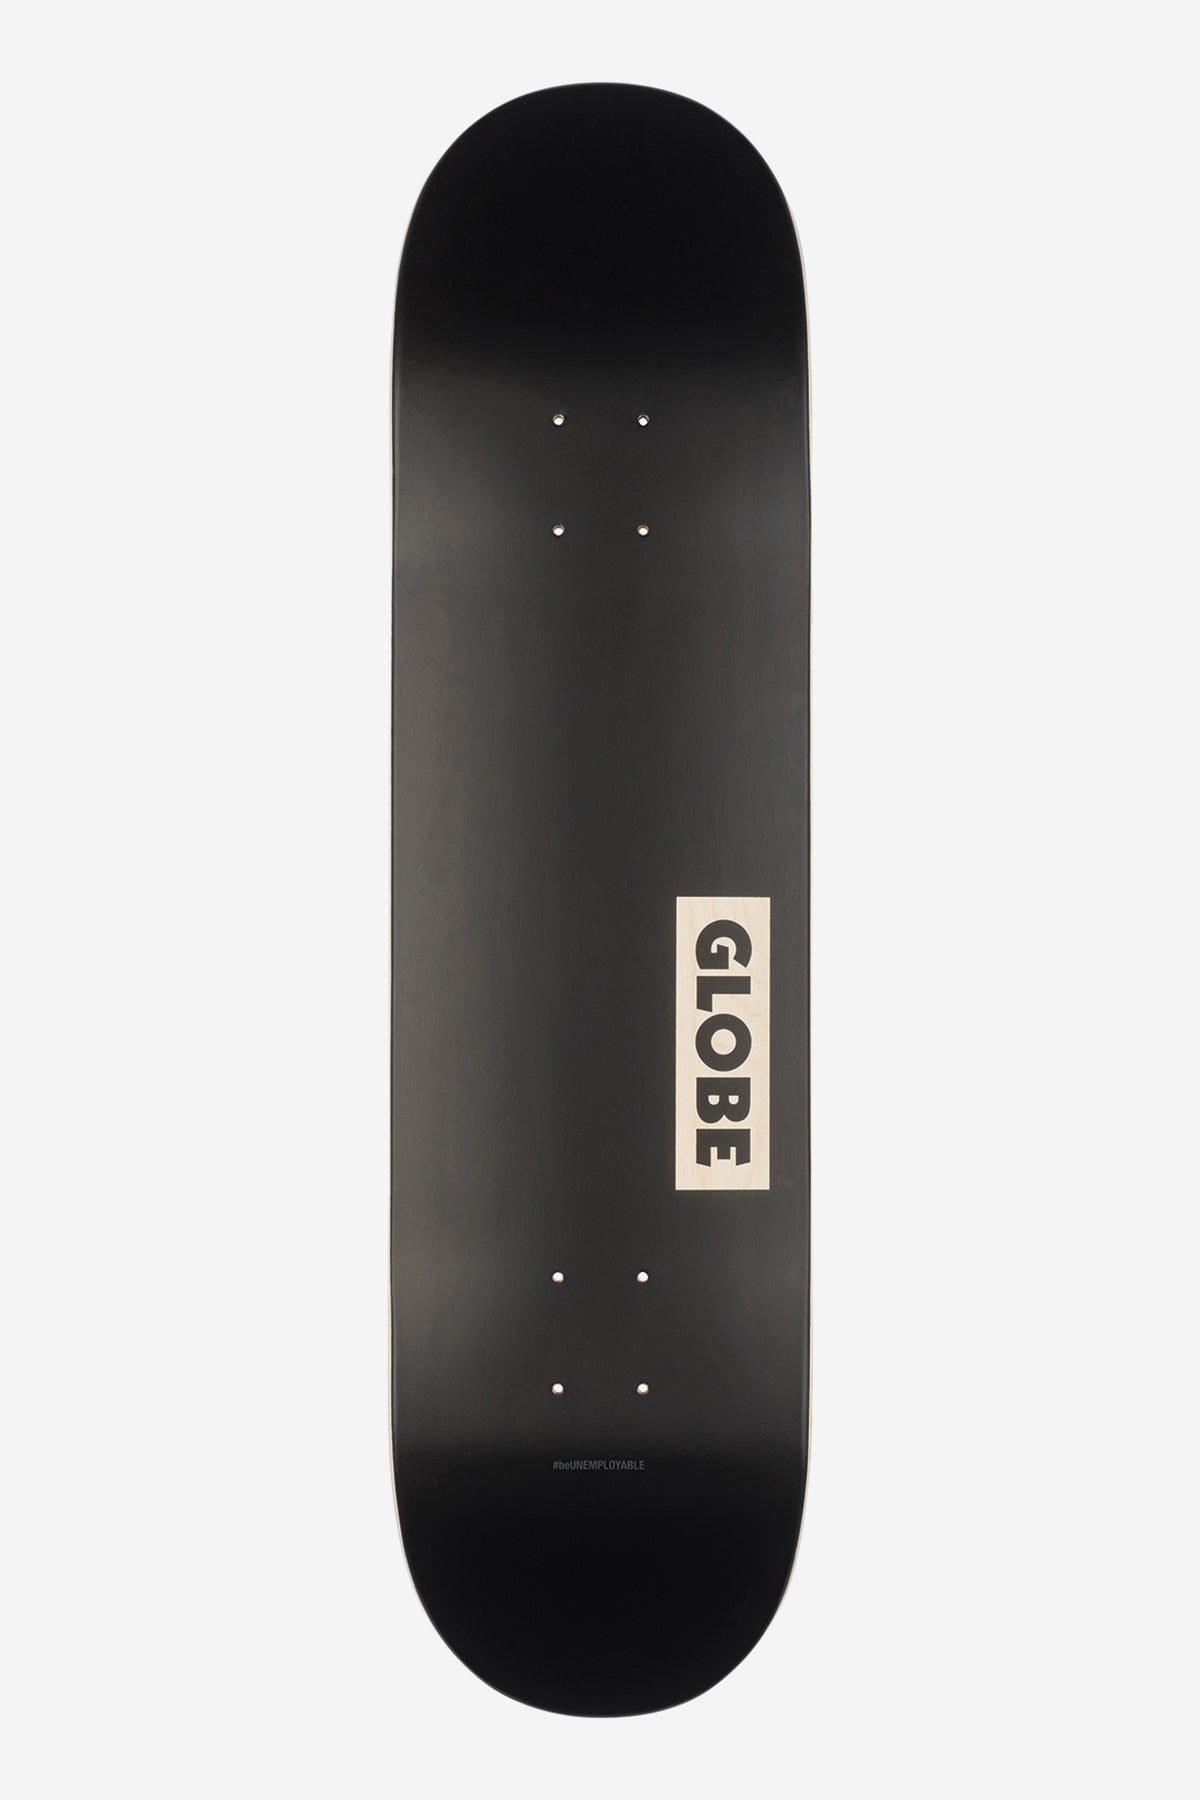 Globe - Goodstock - Black - 8.125" Skateboard Deck